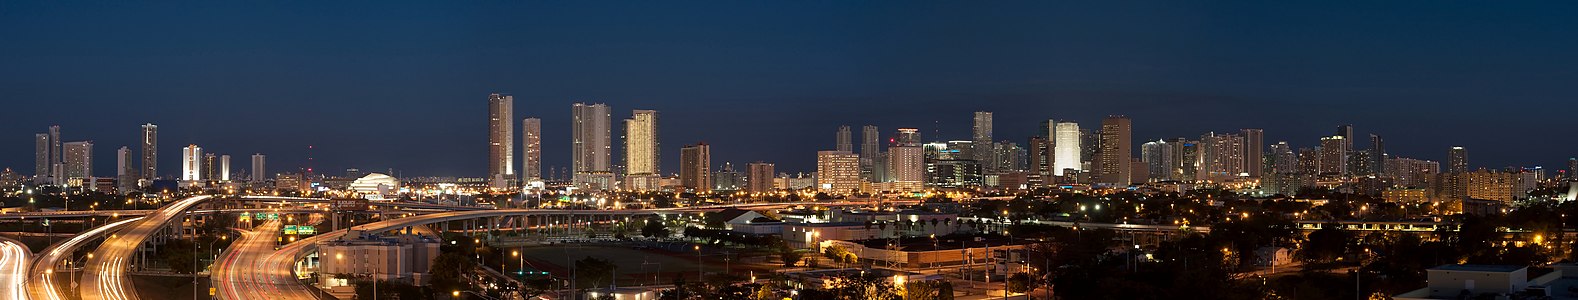 Amerika Birleşik Devletleri'nin Florida eyaletinin ikinci büyük kenti olan Miami 'nin şehir merkezinden bir görüntü. (Üreten: Dori)